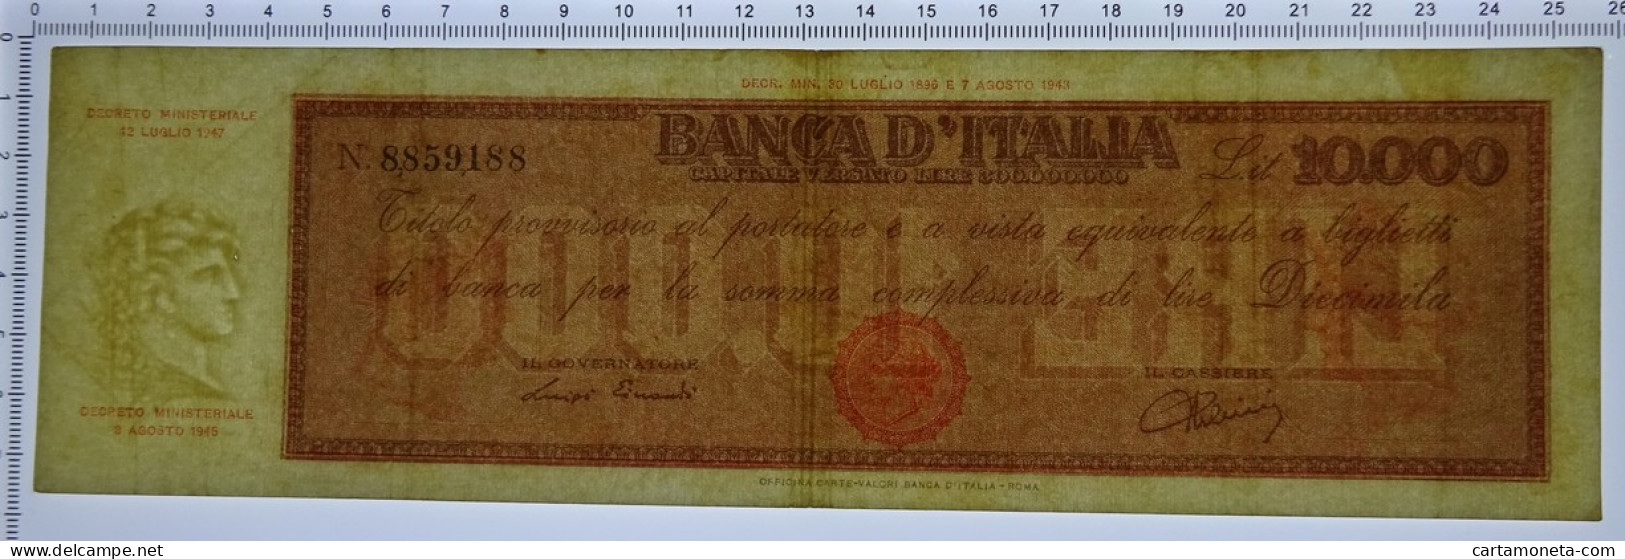 10000 LIRE TITOLO PROVVISORIO TESTINA REPUBBLICA ITALIANA 12/07/1947 BB/BB+ - Altri & Non Classificati